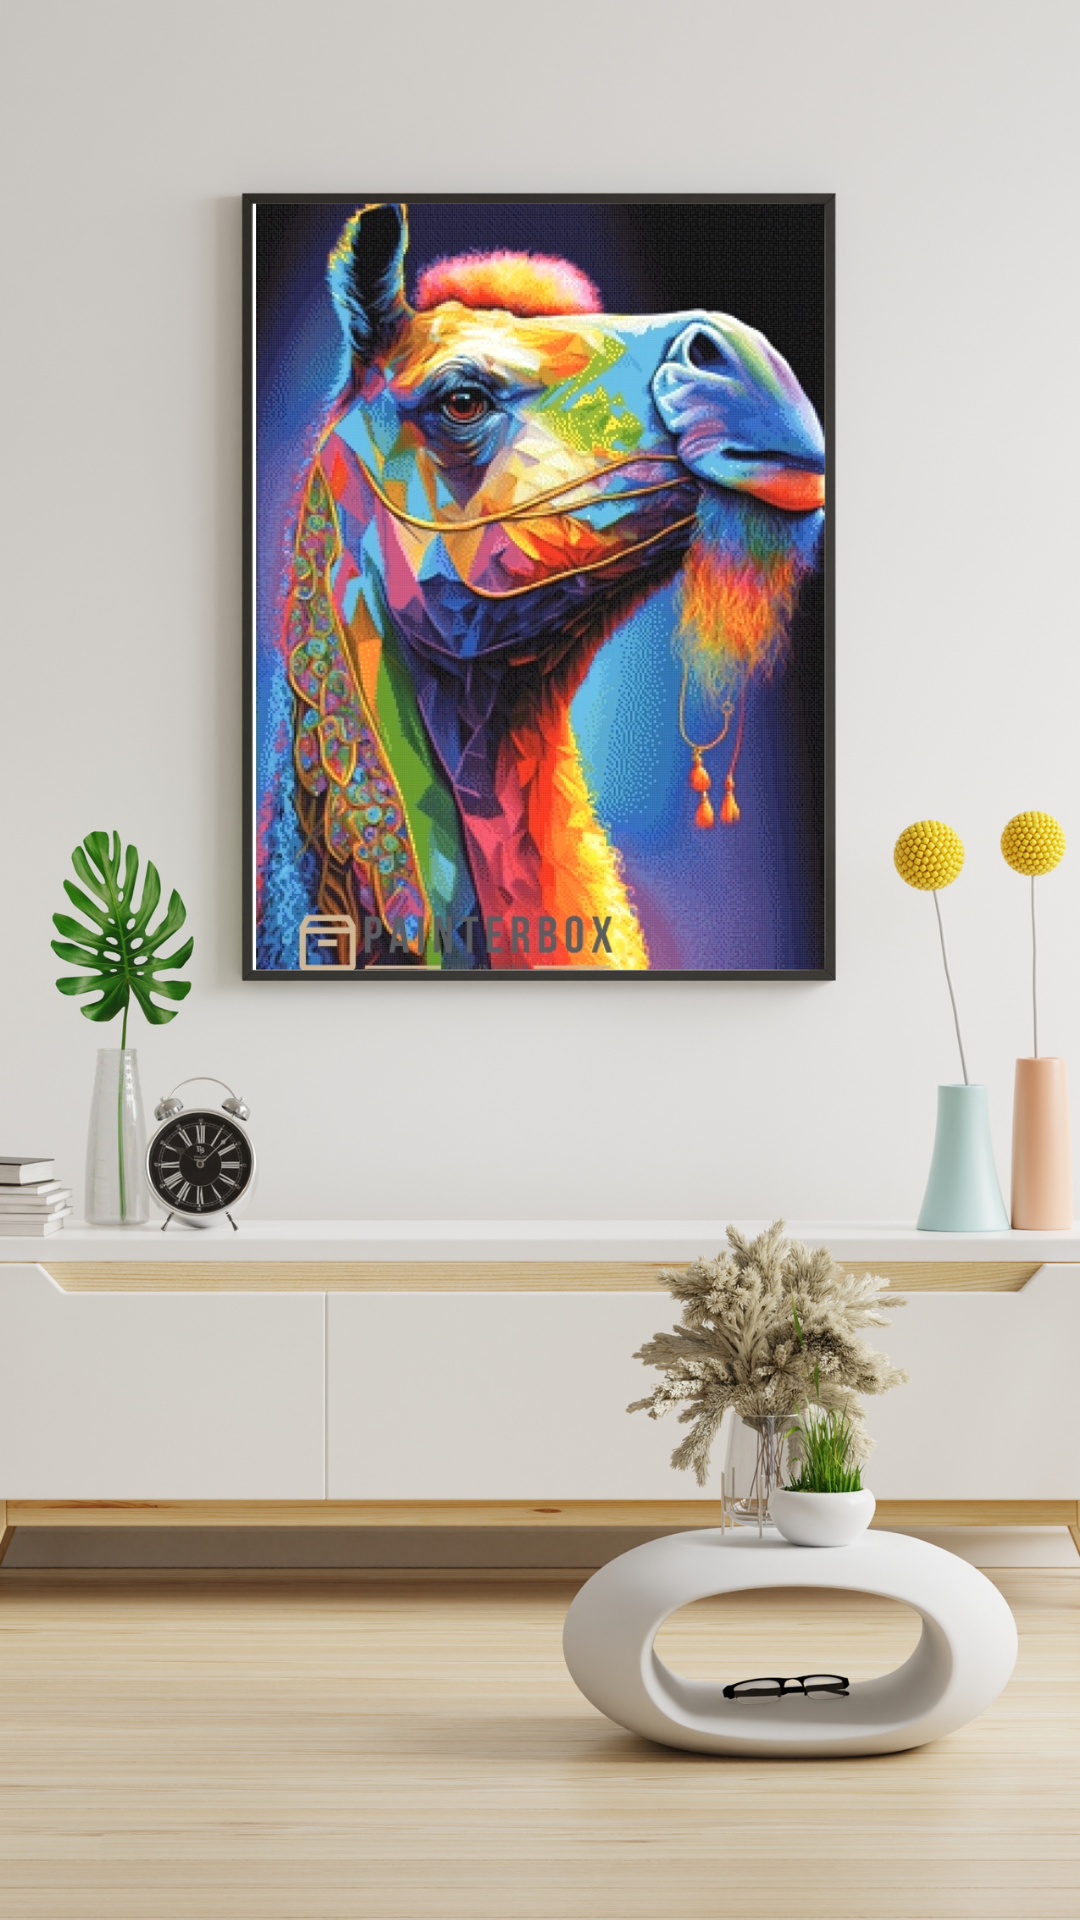 Rainbow Camel by Bátor Gábor 290 colors